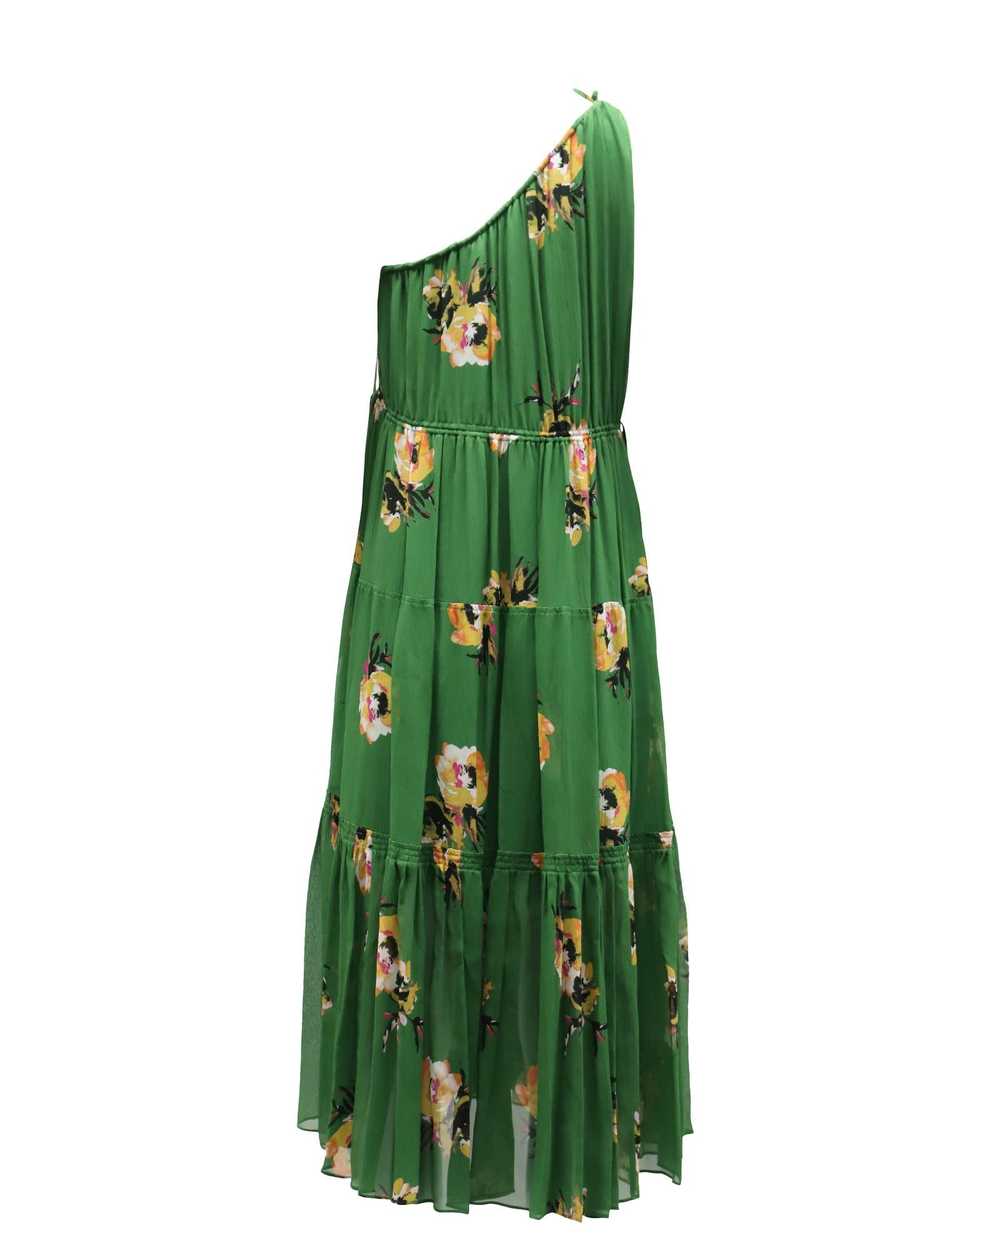 A.L.C. Green Silk One-Shoulder Floral Dress - image 2